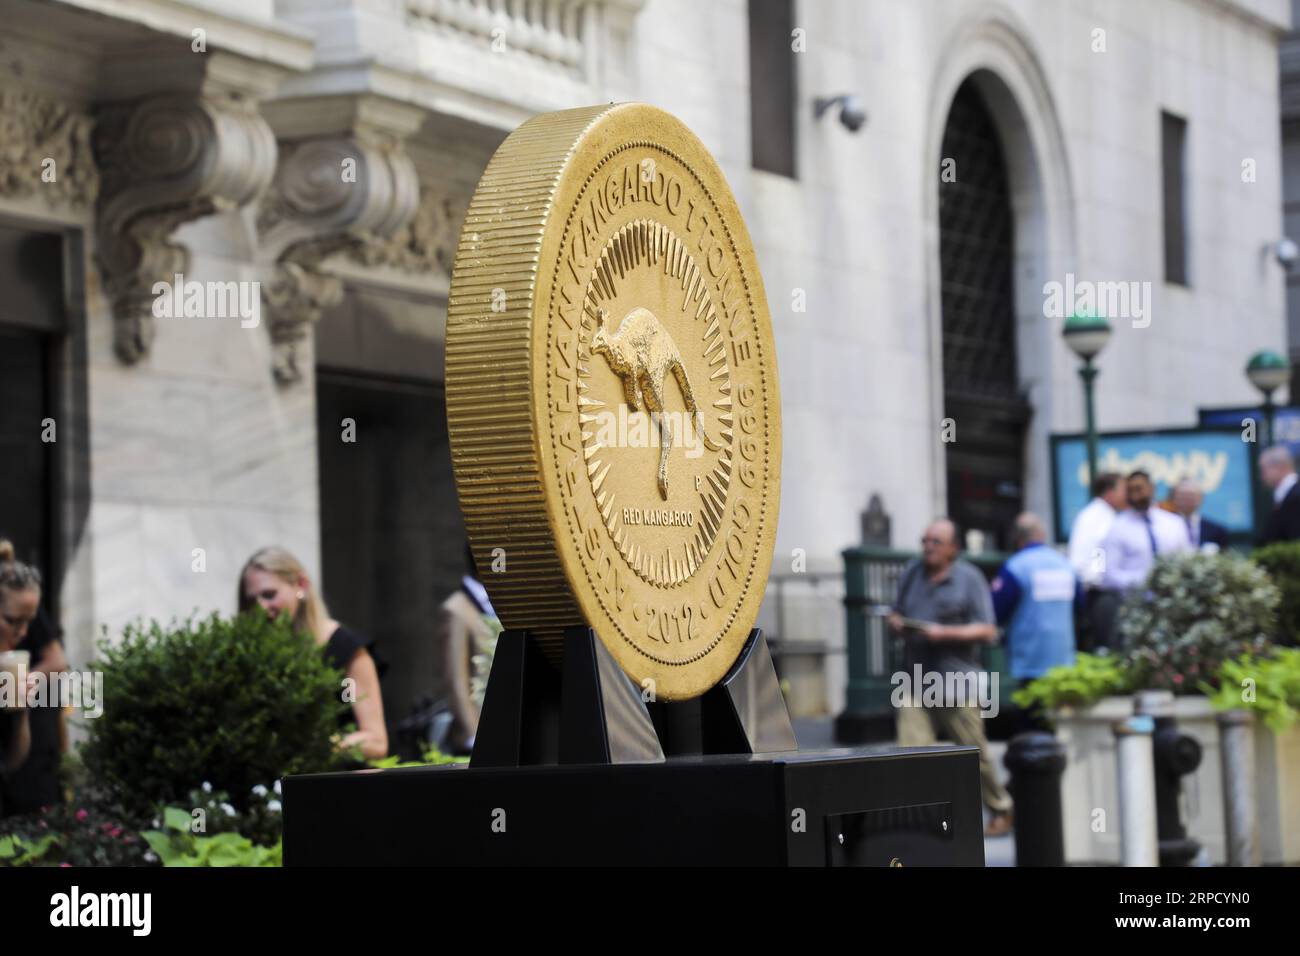 (190716) -- NEW YORK, 16. Juli 2019 -- Eine Goldmünze ist am 16. Juli 2019 vor der New Yorker Börse in New York, USA, zu sehen. Die kolossale 1-Tonnen-Goldmünze wurde hier am Dienstag anlässlich der offiziellen Einführung des Perth Mint Physical Gold Exchange Traded Fund ausgestellt. Die 99,99% reine Goldmünze misst etwa 80 cm breit und mehr als 12 cm tief. ) US-NEW YORK-EINE TONNE GOLDMÜNZE WANGXYING PUBLICATIONXNOTXINXCHN Stockfoto